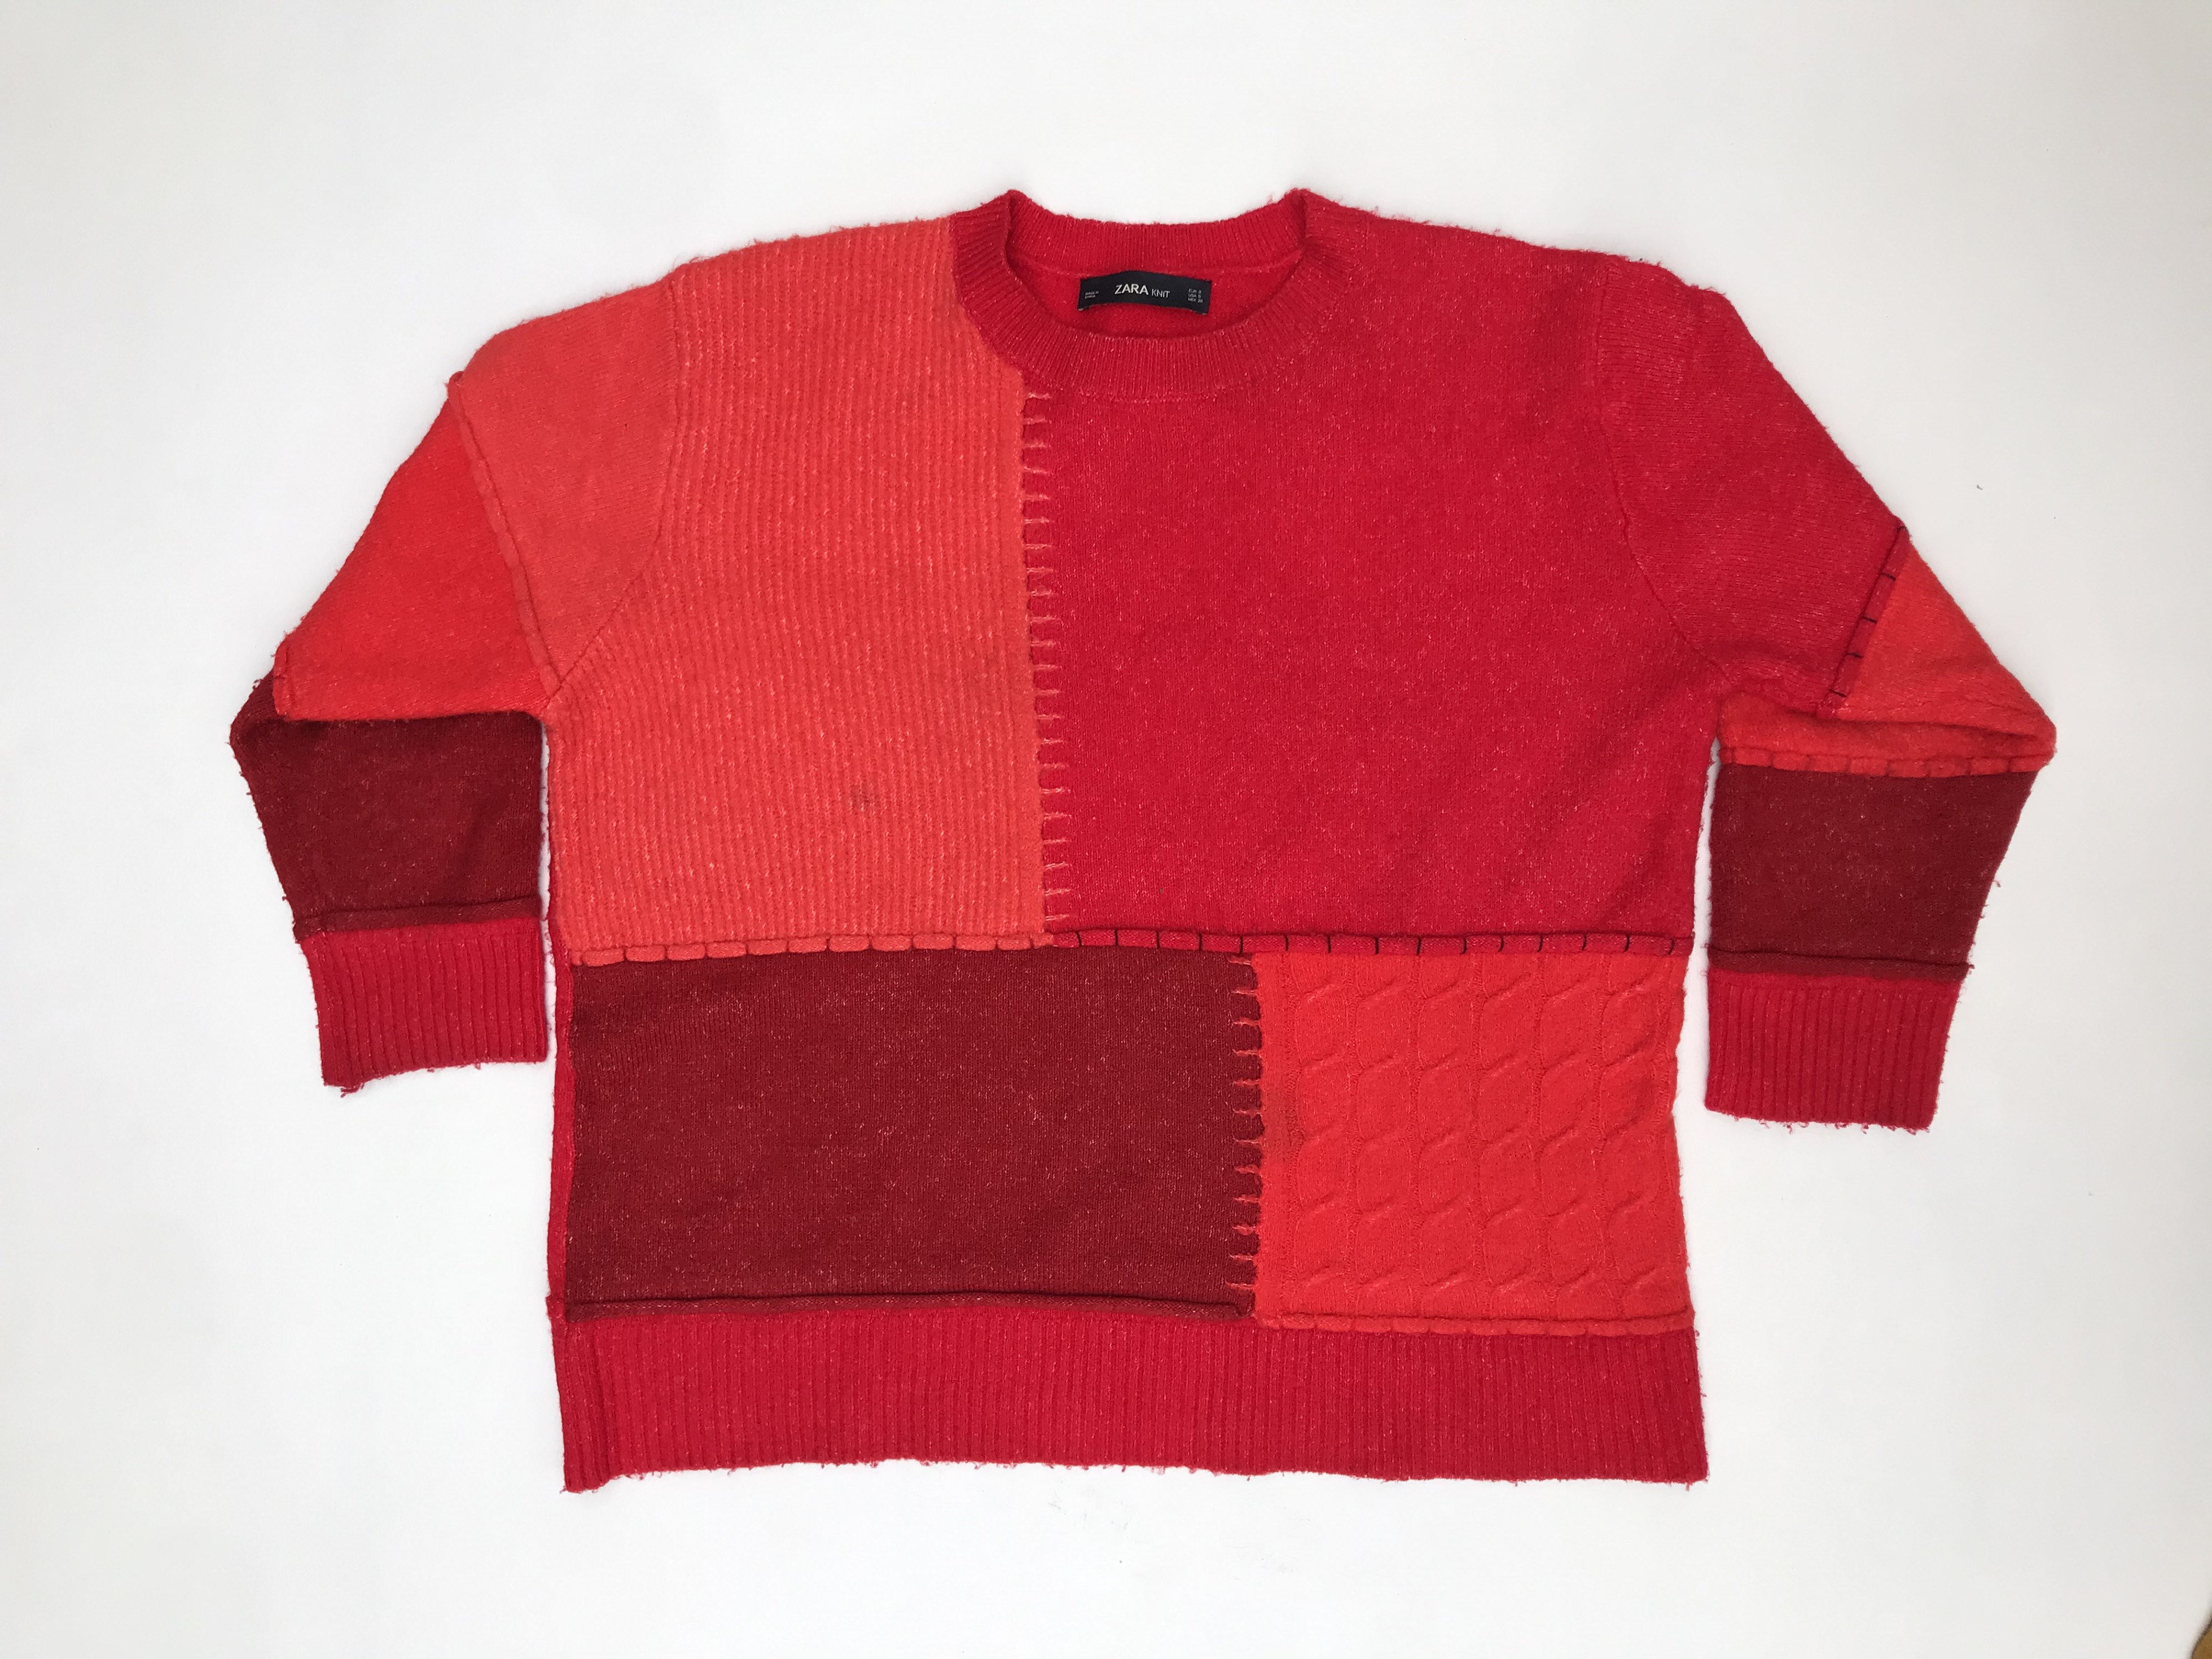 Chompa Zara oversized en tonos rojos estilo patchwork, es larga bajo la cadera y ancha. ¡Abriga! Precio original S/ 200